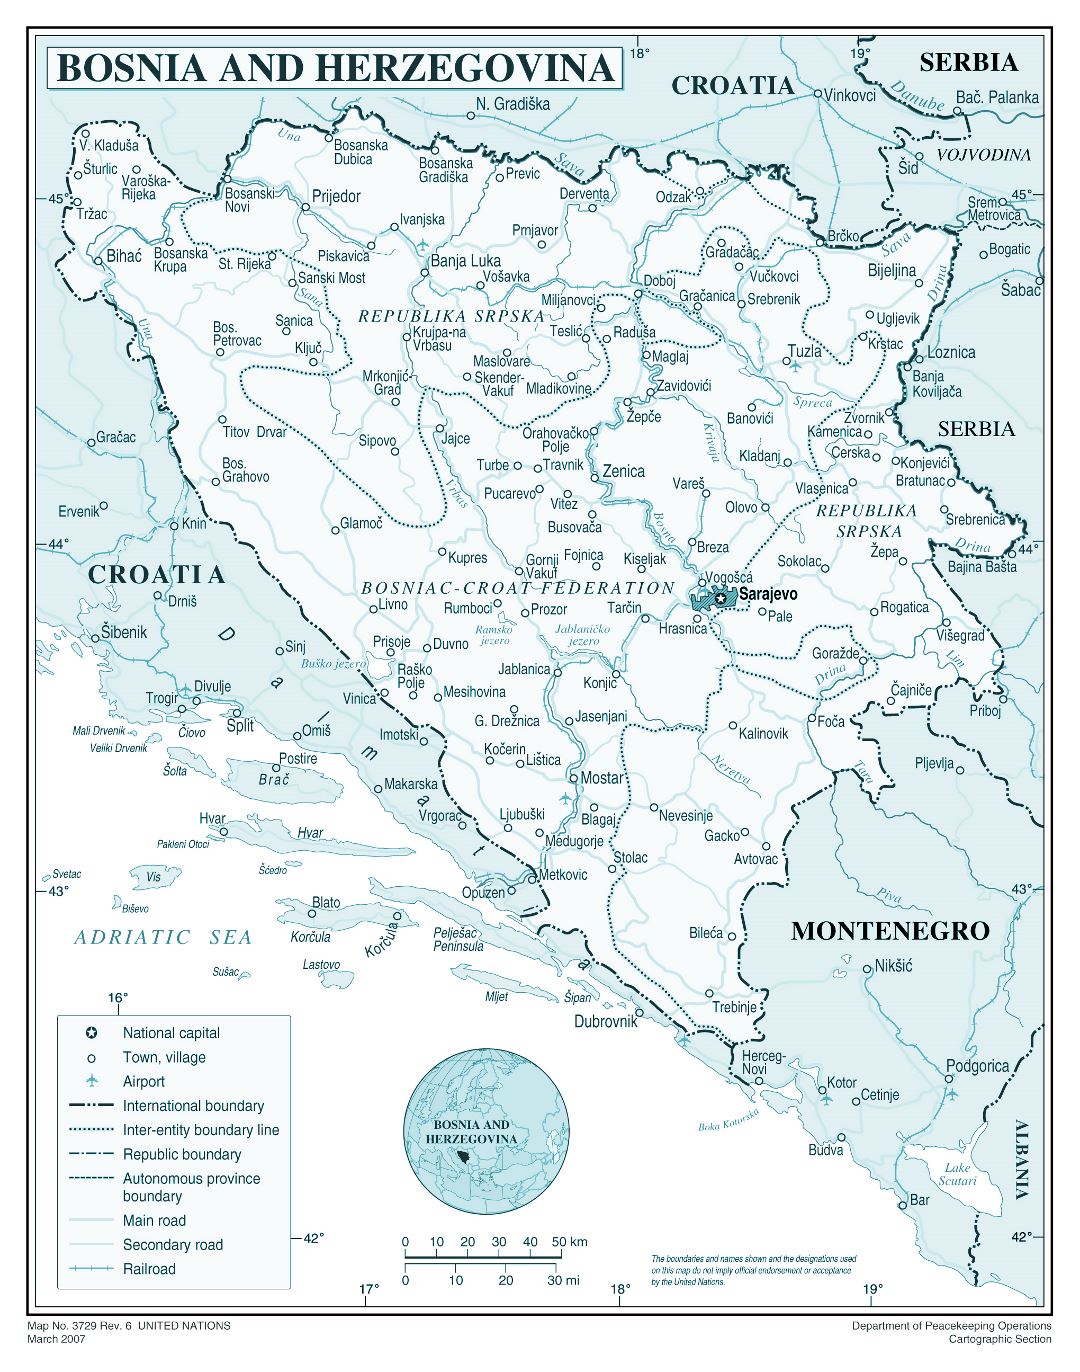 Большая детальная политическая и административная карта Боснии и Герцеговины с дорогами, городами и аэропортами